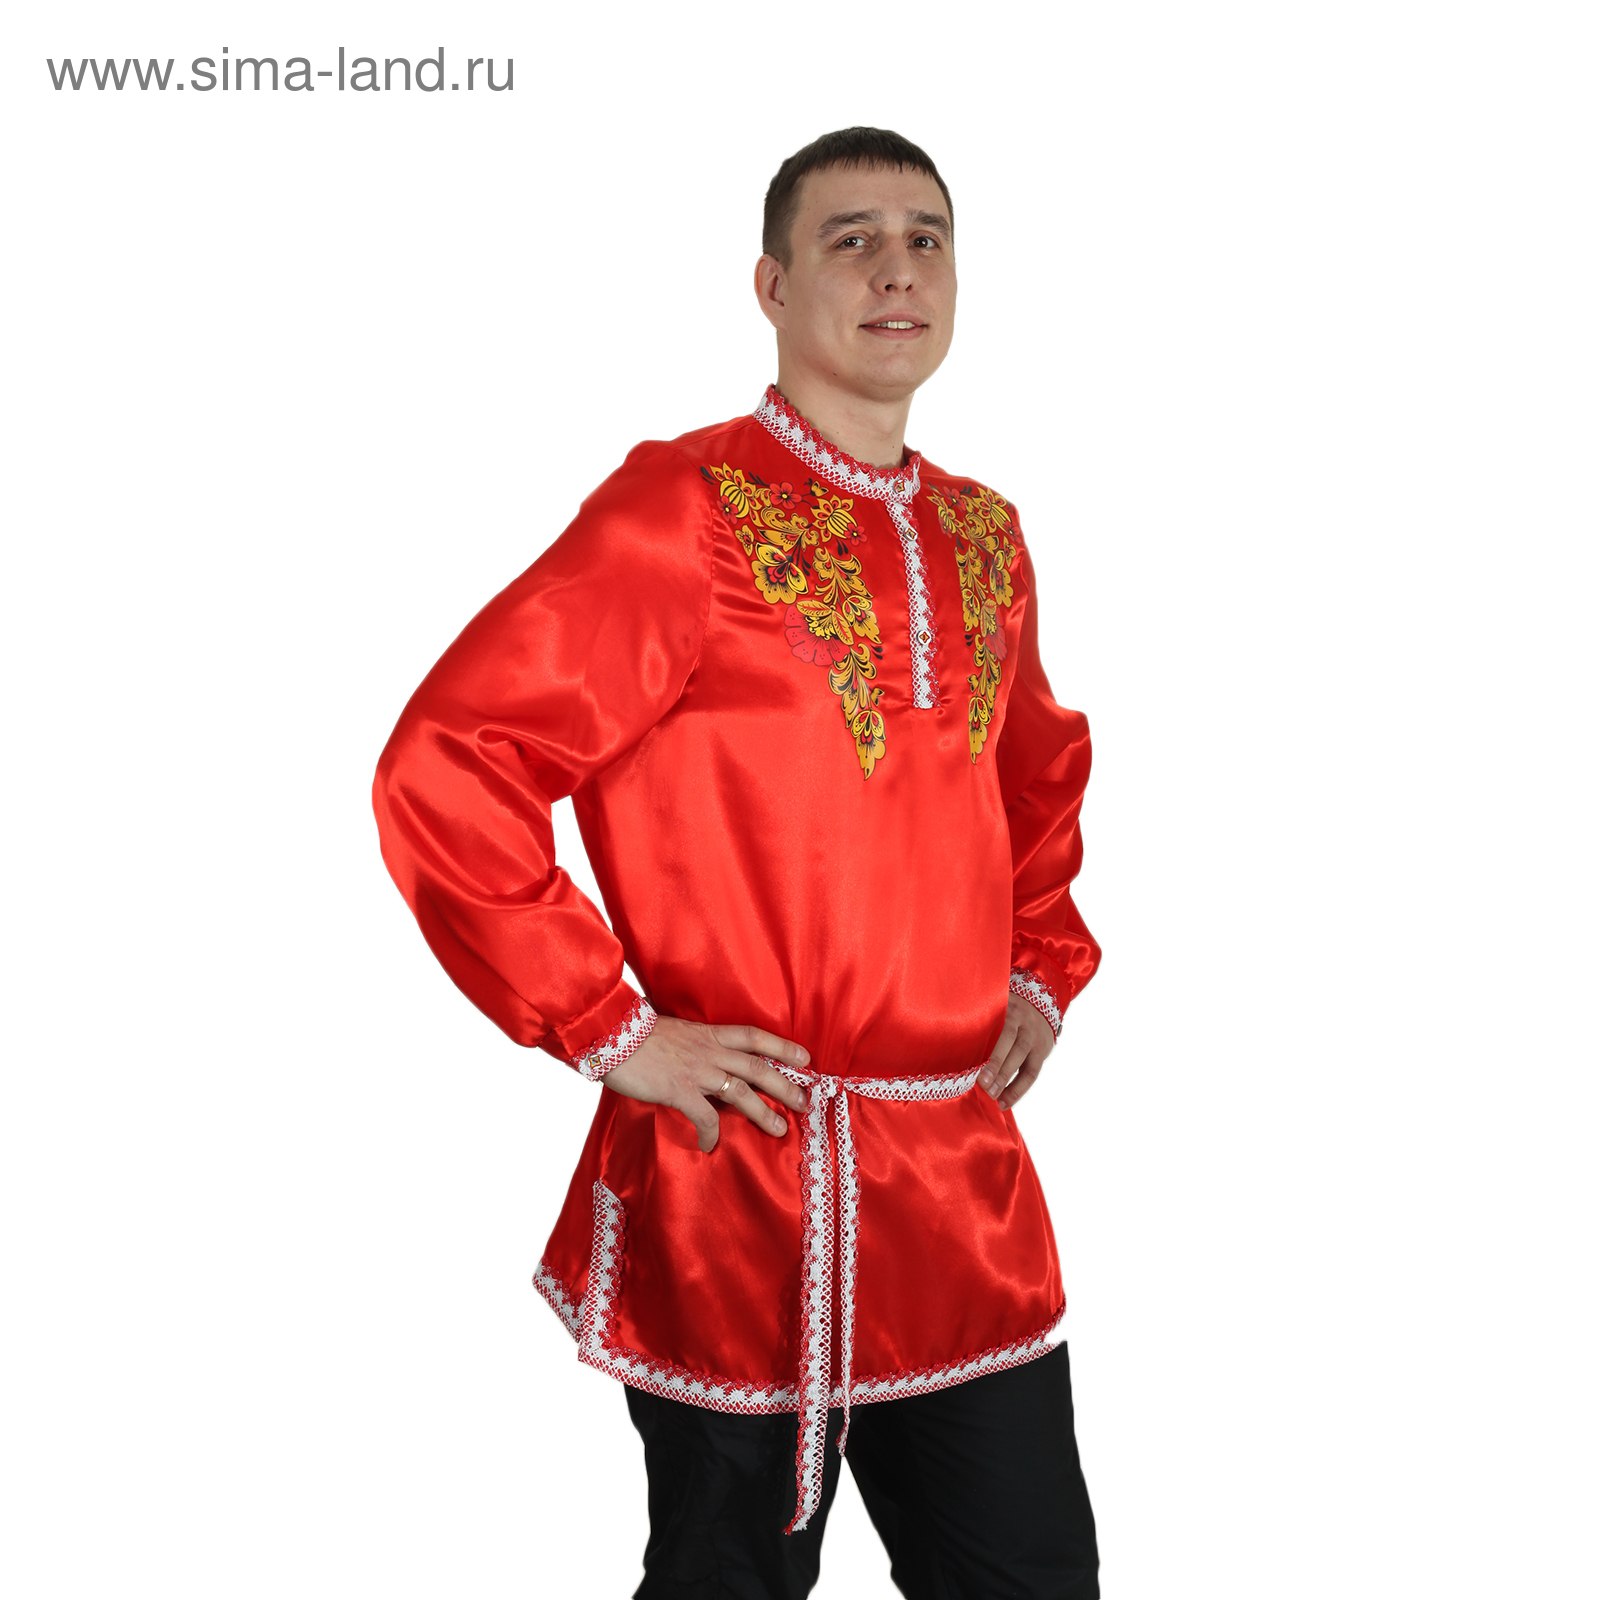 Мужской народный костюм